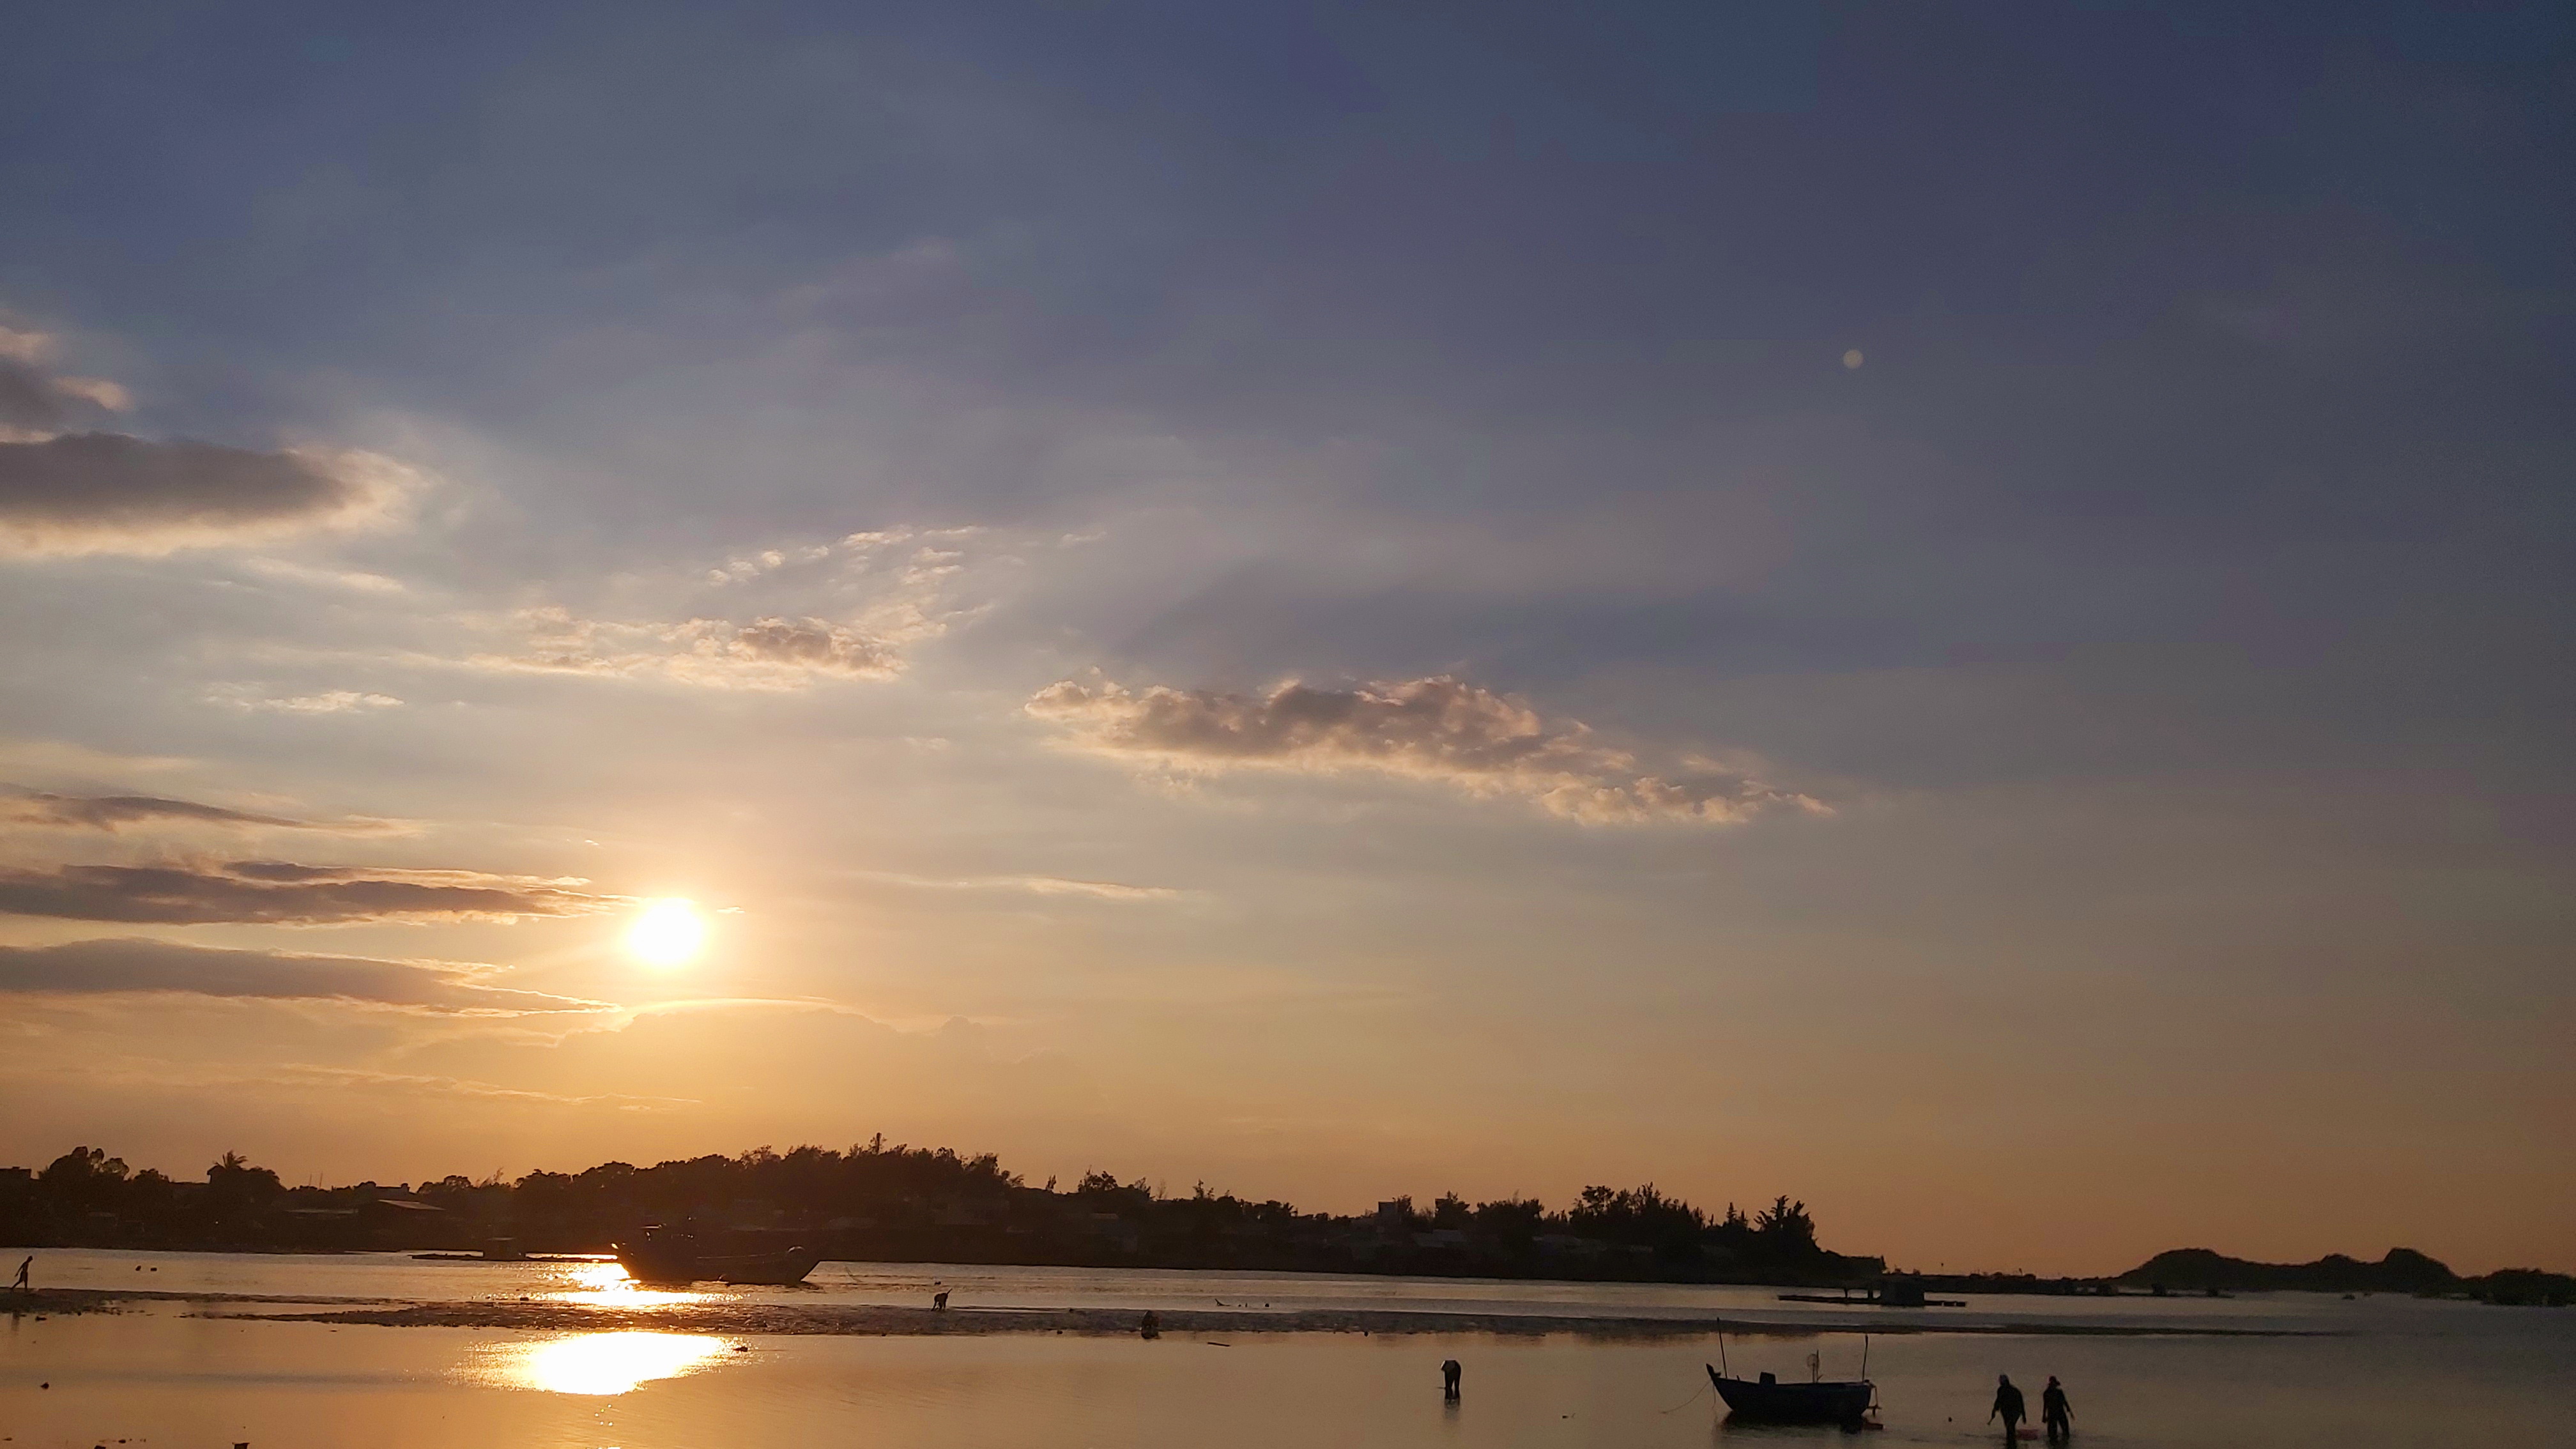 Sông Trà Bồng: Mãi mãi là biểu tượng văn hóa của Quảng Ngãi, Sông Trà Bồng lấp lánh với ánh nắng rực rỡ của bình minh. Bản sắc địa phương tươi sáng trên dòng sông cùng những khu vườn bên bờ. Bức ảnh sẽ giúp bạn cảm nhận cảm giác yên bình và giải tỏa stress trong cuộc sống.